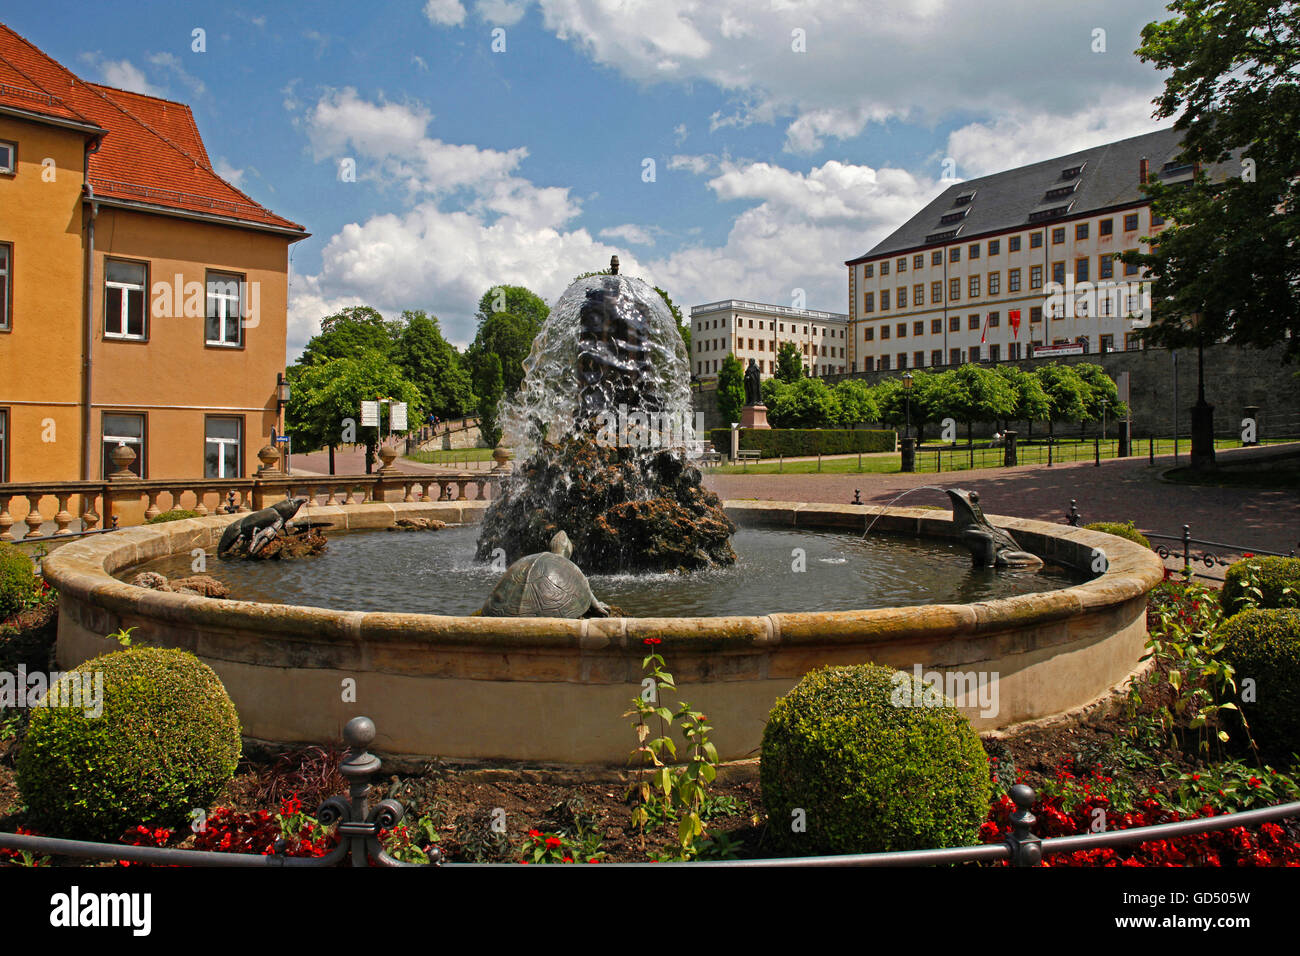 Fontaine, partie du dispositif de l'eau, château de Friedenstein, Gotha, Thuringe, Allemagne Banque D'Images